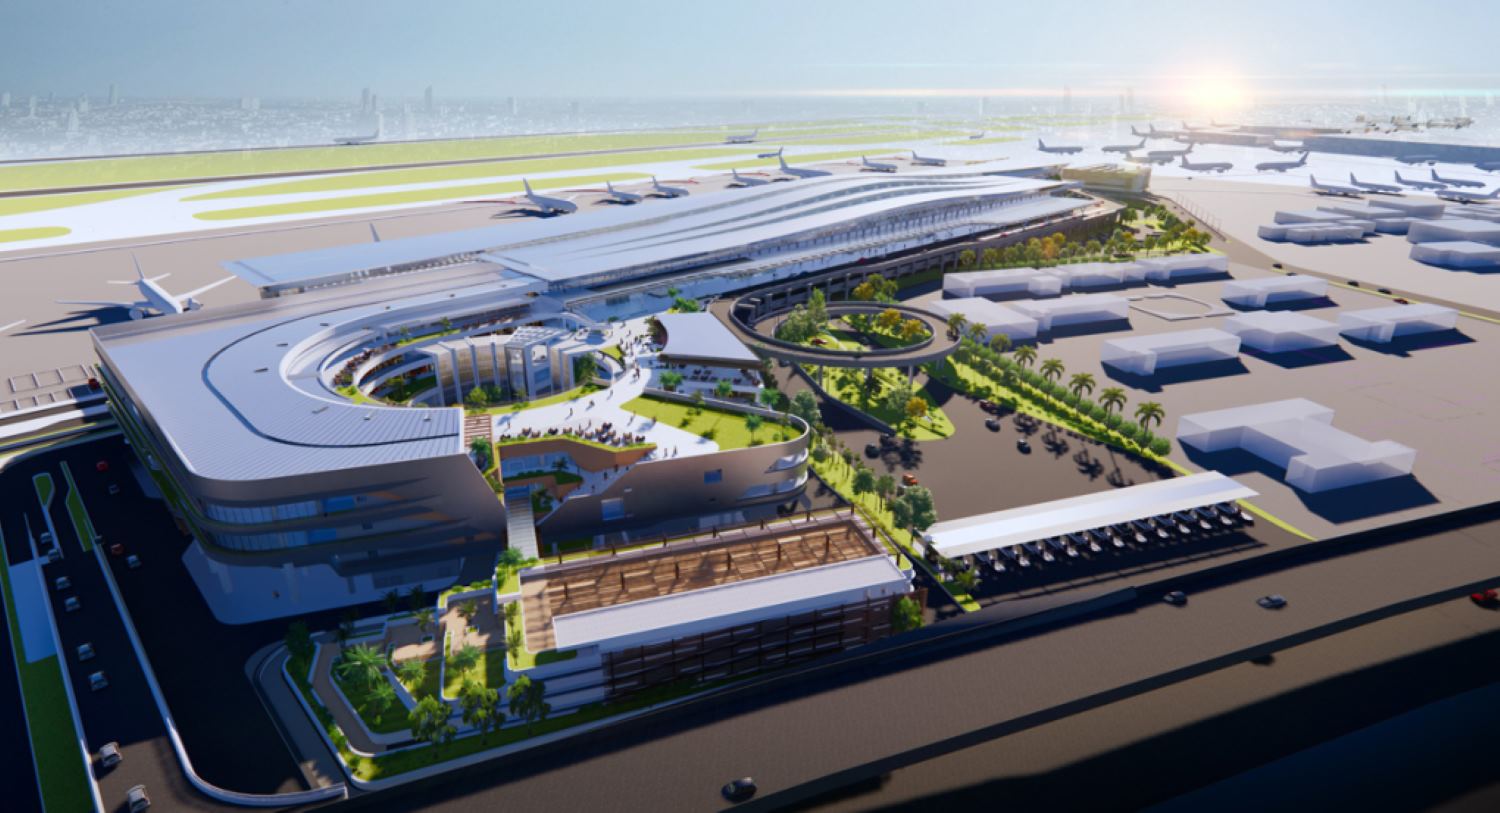 Ga T3 sân bay Tân Sơn Nhất được khởi công cuối năm 2022 với tổng mức đầu tư gần 11.000 tỉ đồng, từ nguồn vốn của Tổng công ty hàng không (ACV). Nhà ga được xây dựng với công suất 20 triệu lượt khách mỗi năm (đây là nhà ga quốc nội lớn nhất nước), có thể phục vụ cùng lúc 7.000 khách giờ cao điểm.